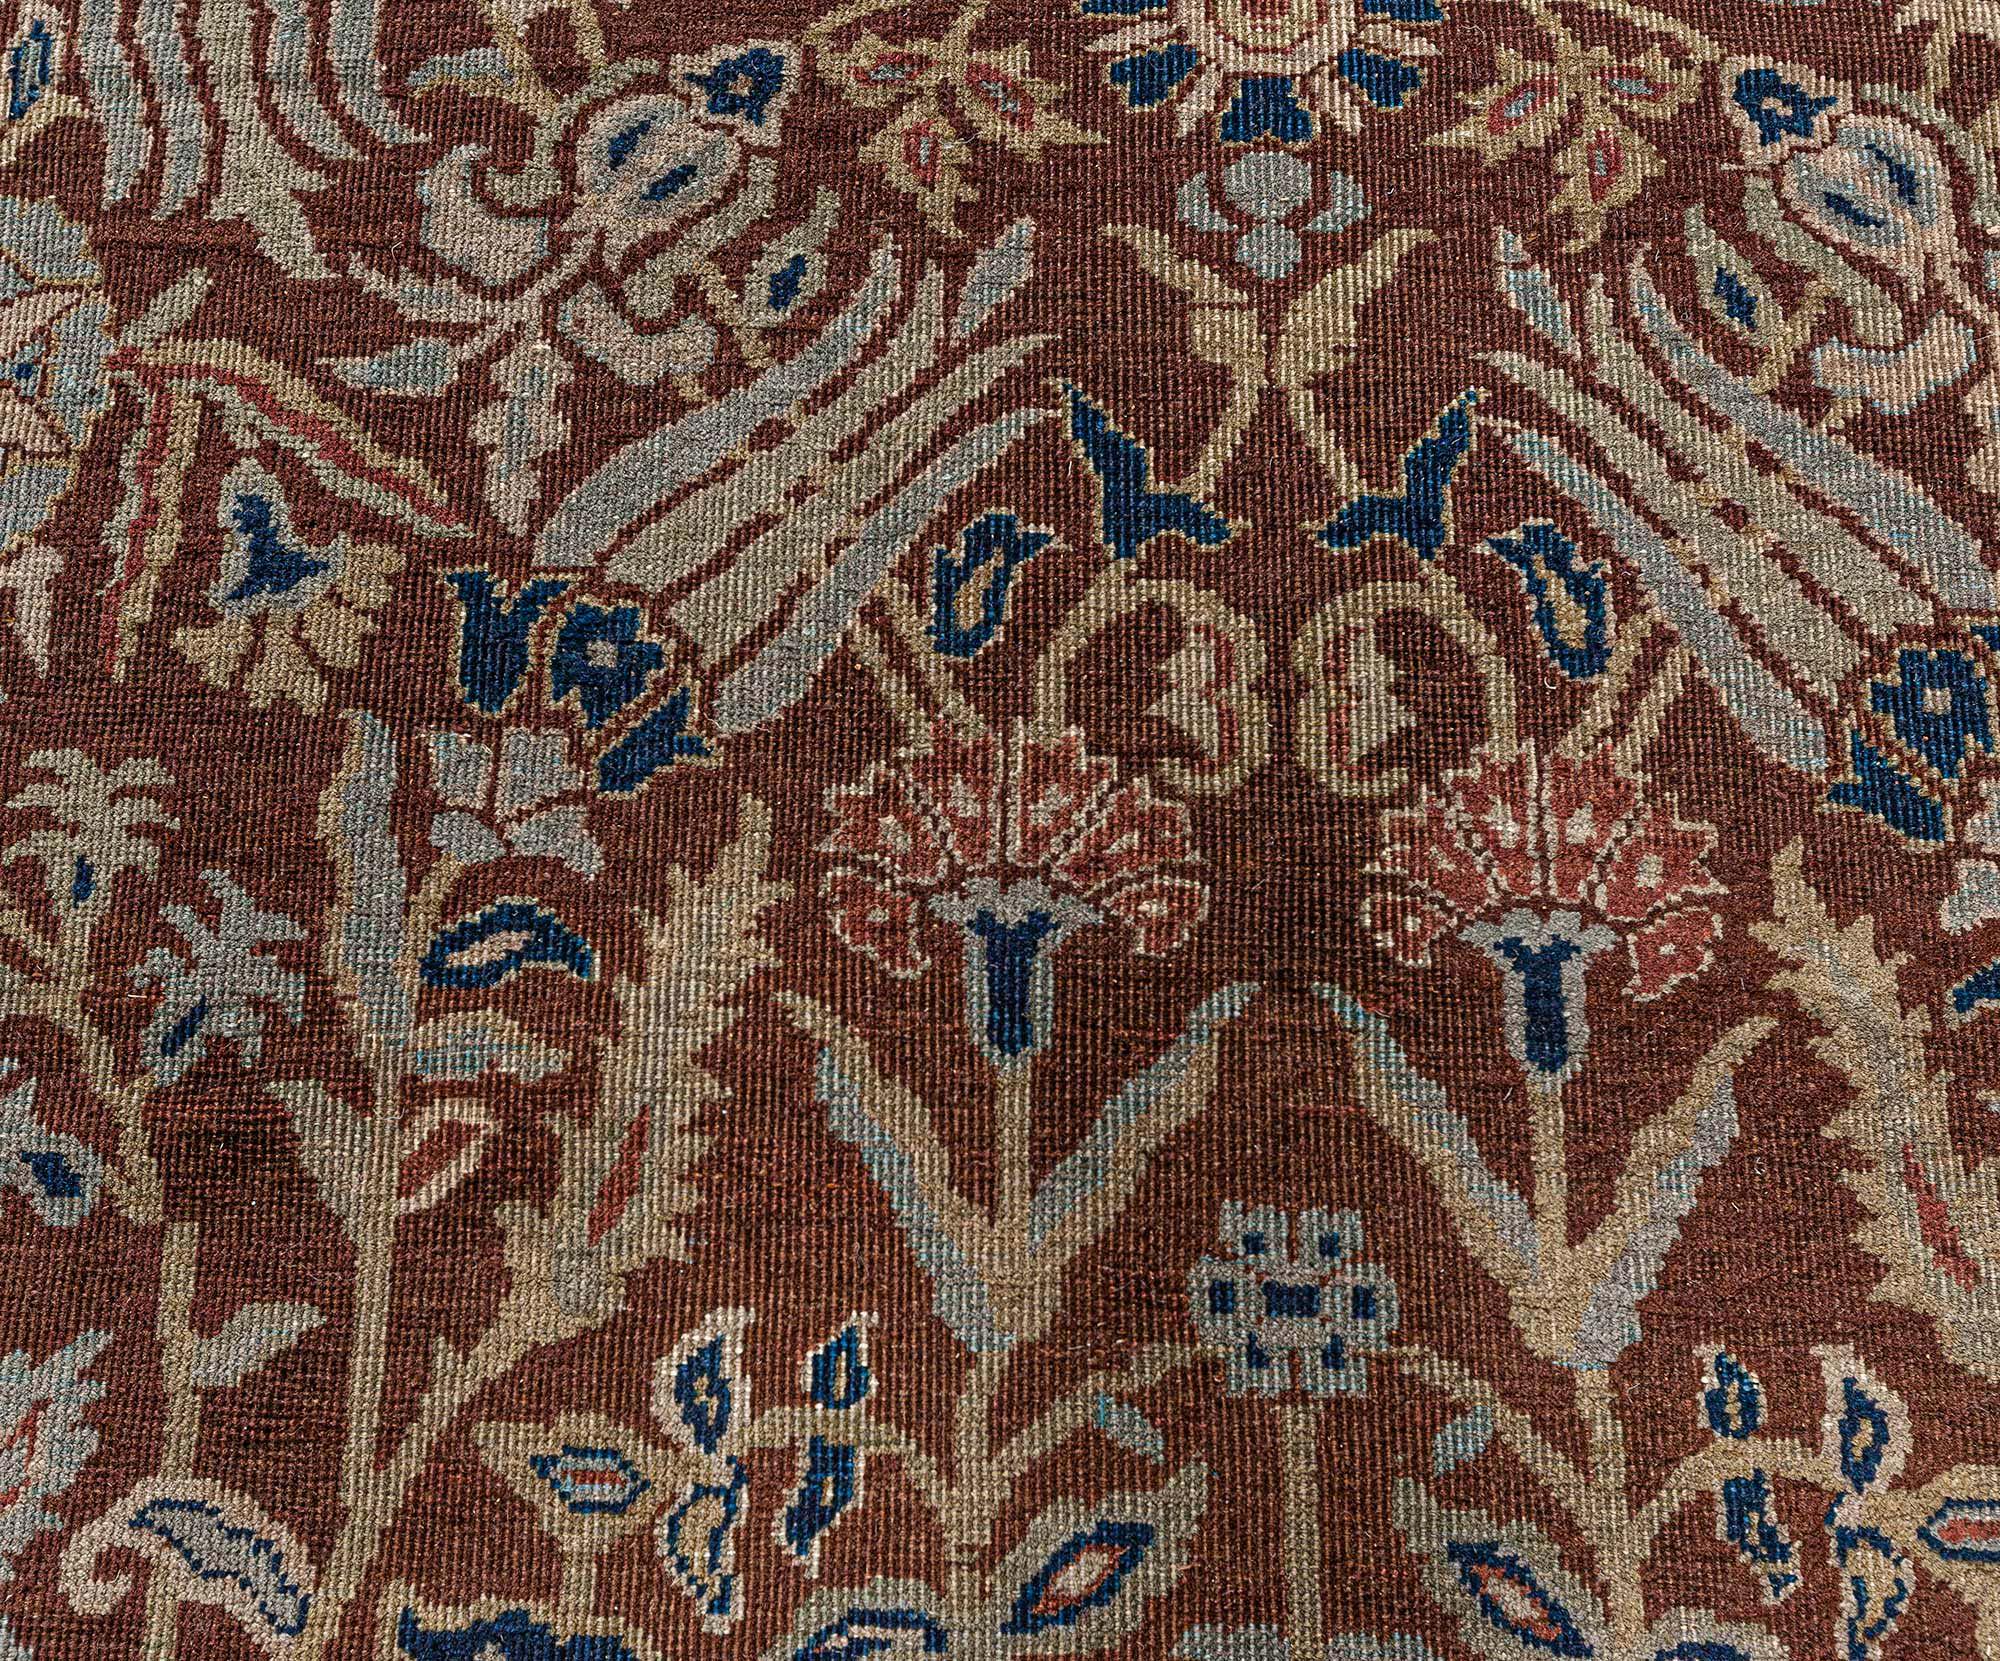 Antique Indian brown handmade wool rug by Doris Leslie Blau
Size: 11'8